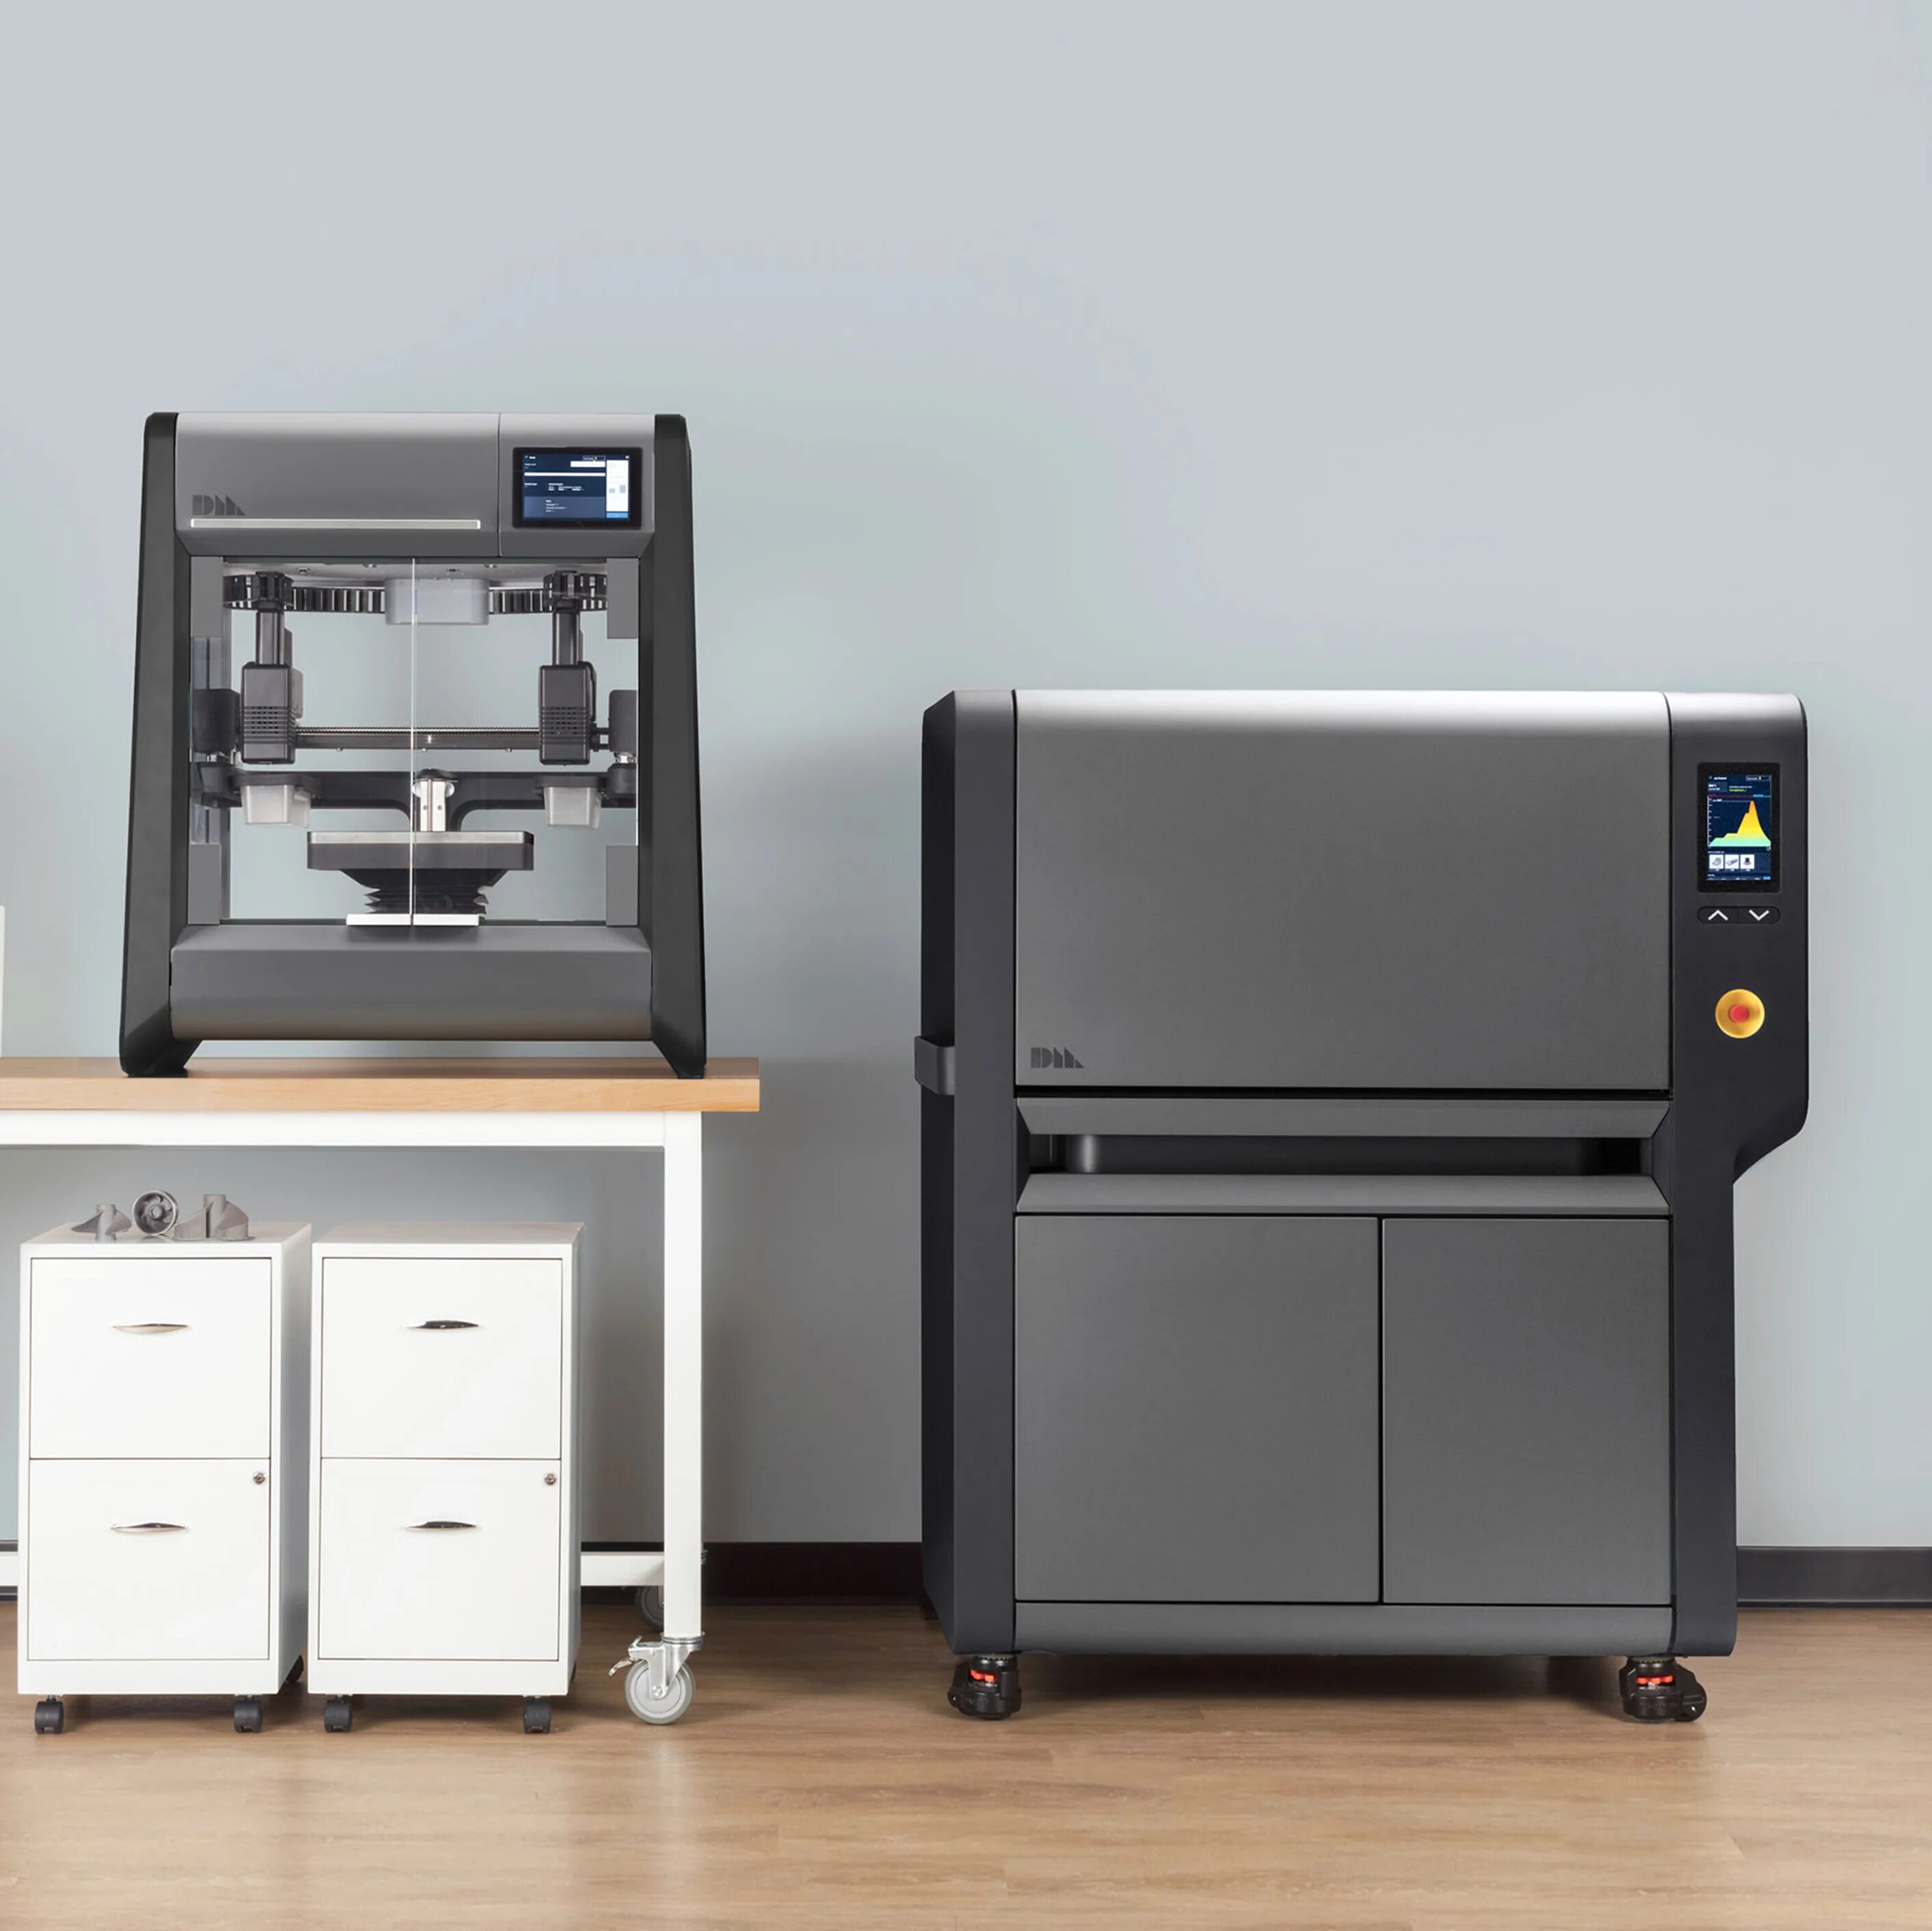 Купить принтер для бизнеса. 3д принтер desktop Metal. 3д принтер desktop Metal Studio System. Принтер для печати на металле. Бизнес на 3d принтере.